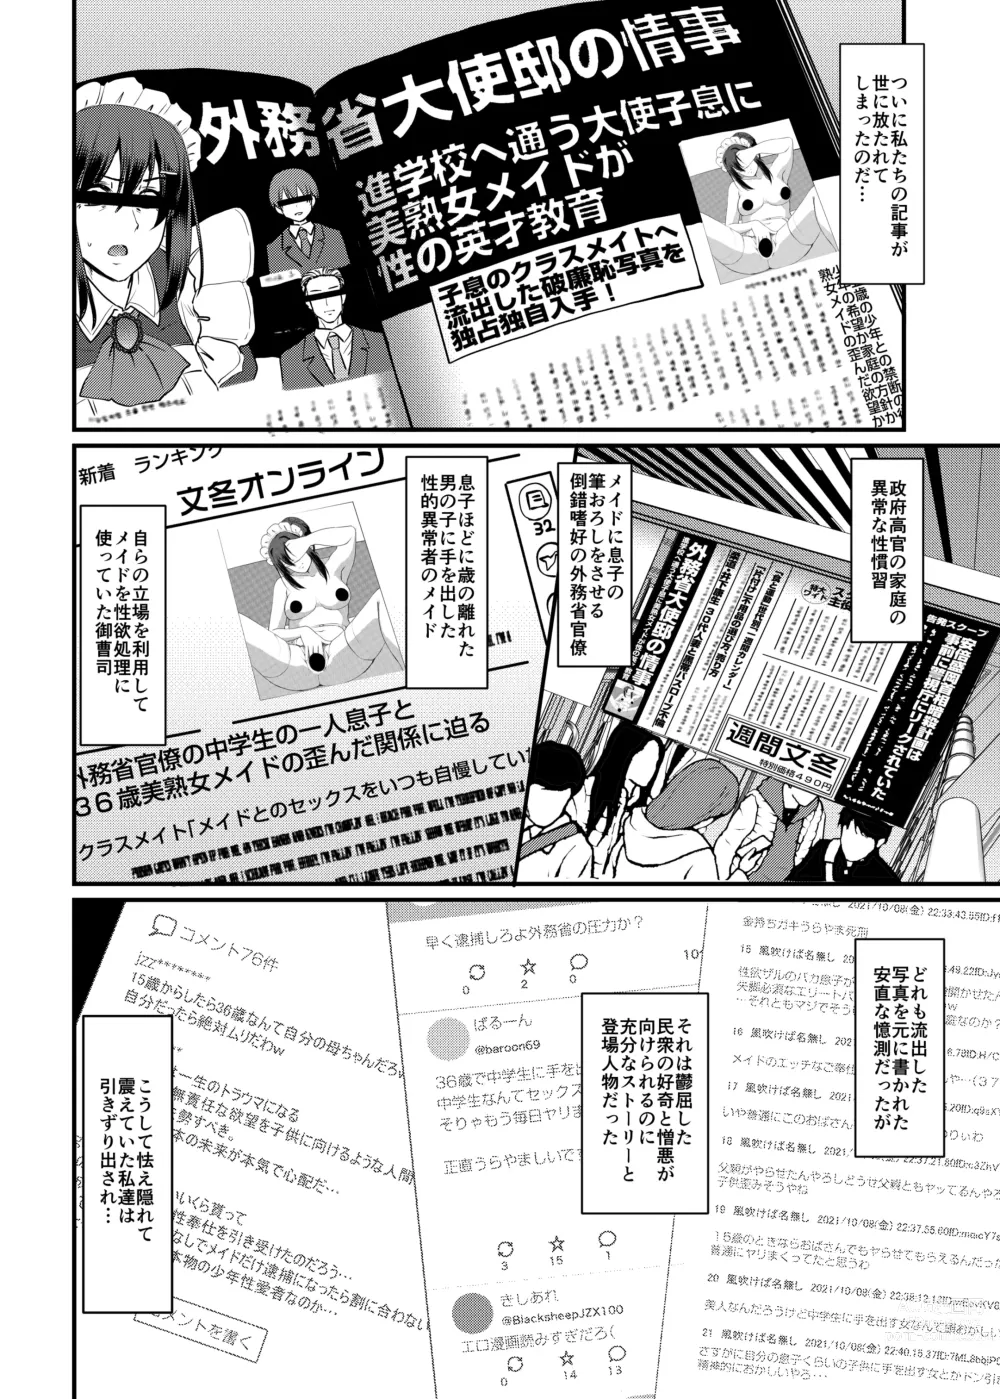 Page 41 of doujinshi Maid no Oshigoto. Saishuushou